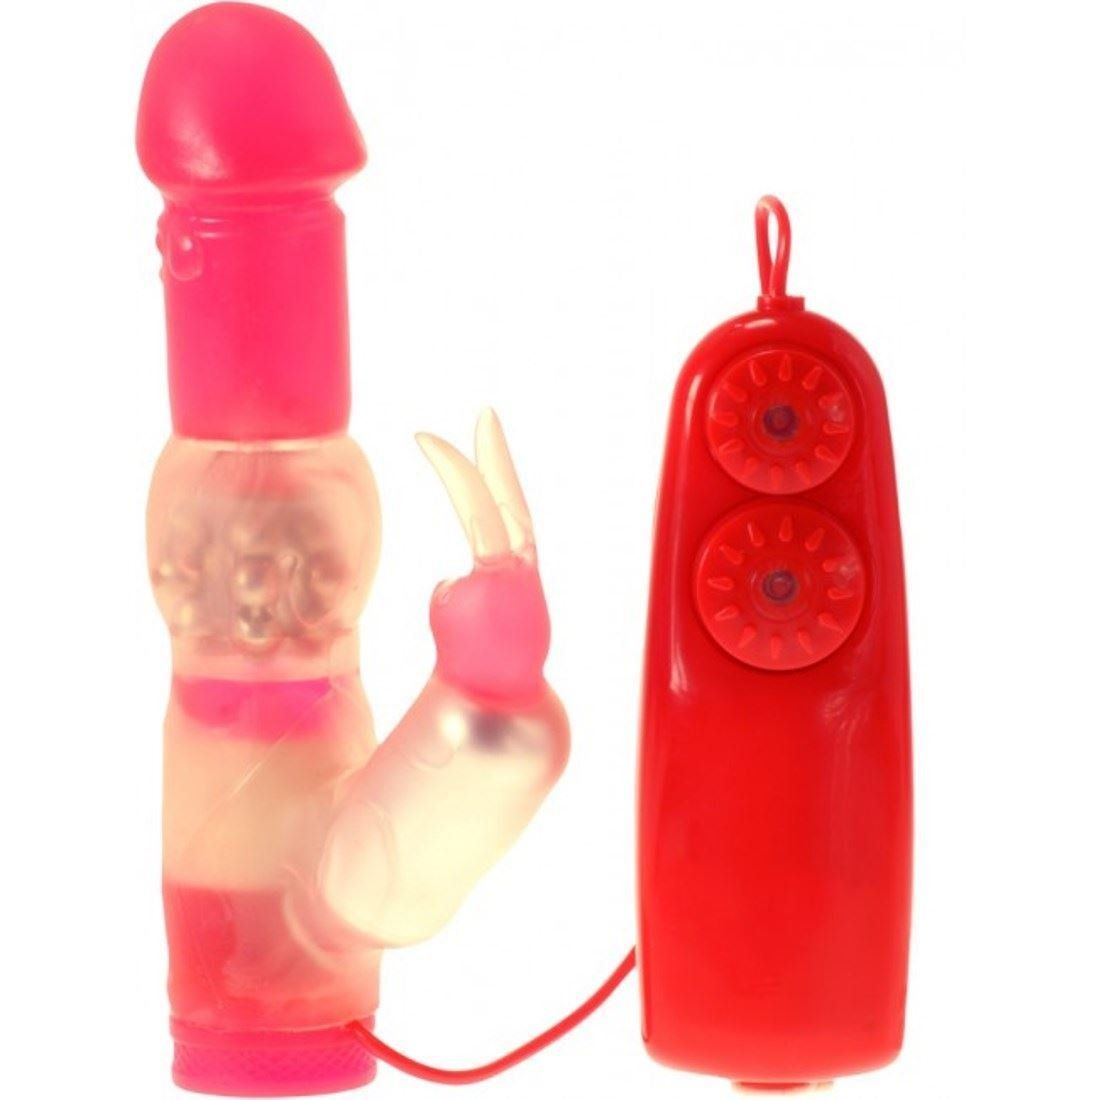 Bubbles reccomend Sex toys for ladies